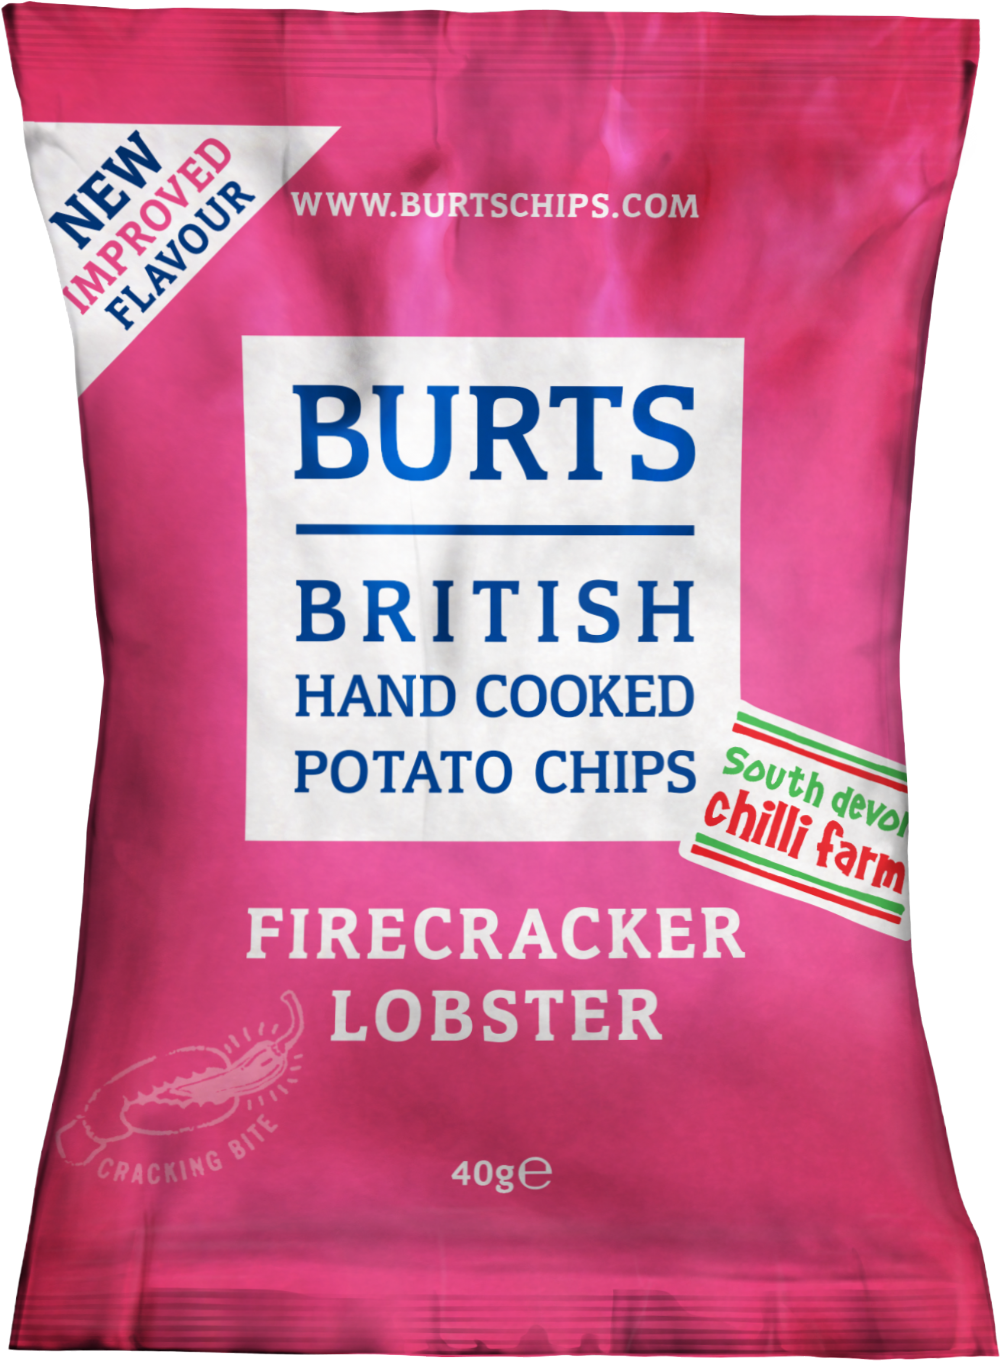 BURTS Potato Chips - Firecracker Lobster 40g